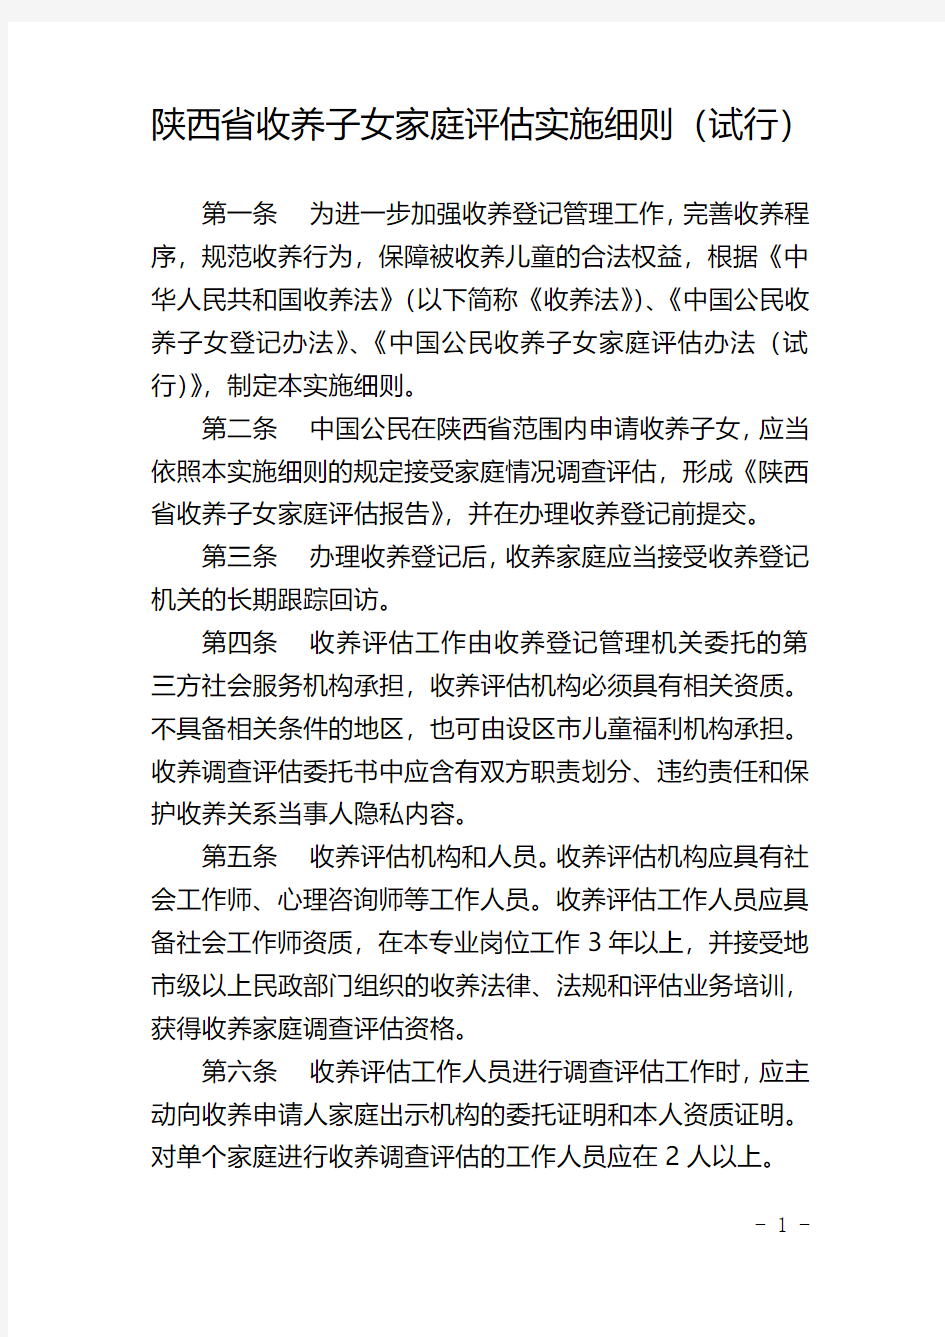 陕西收养子女家庭实施细则试行-中华人民共和国民政部